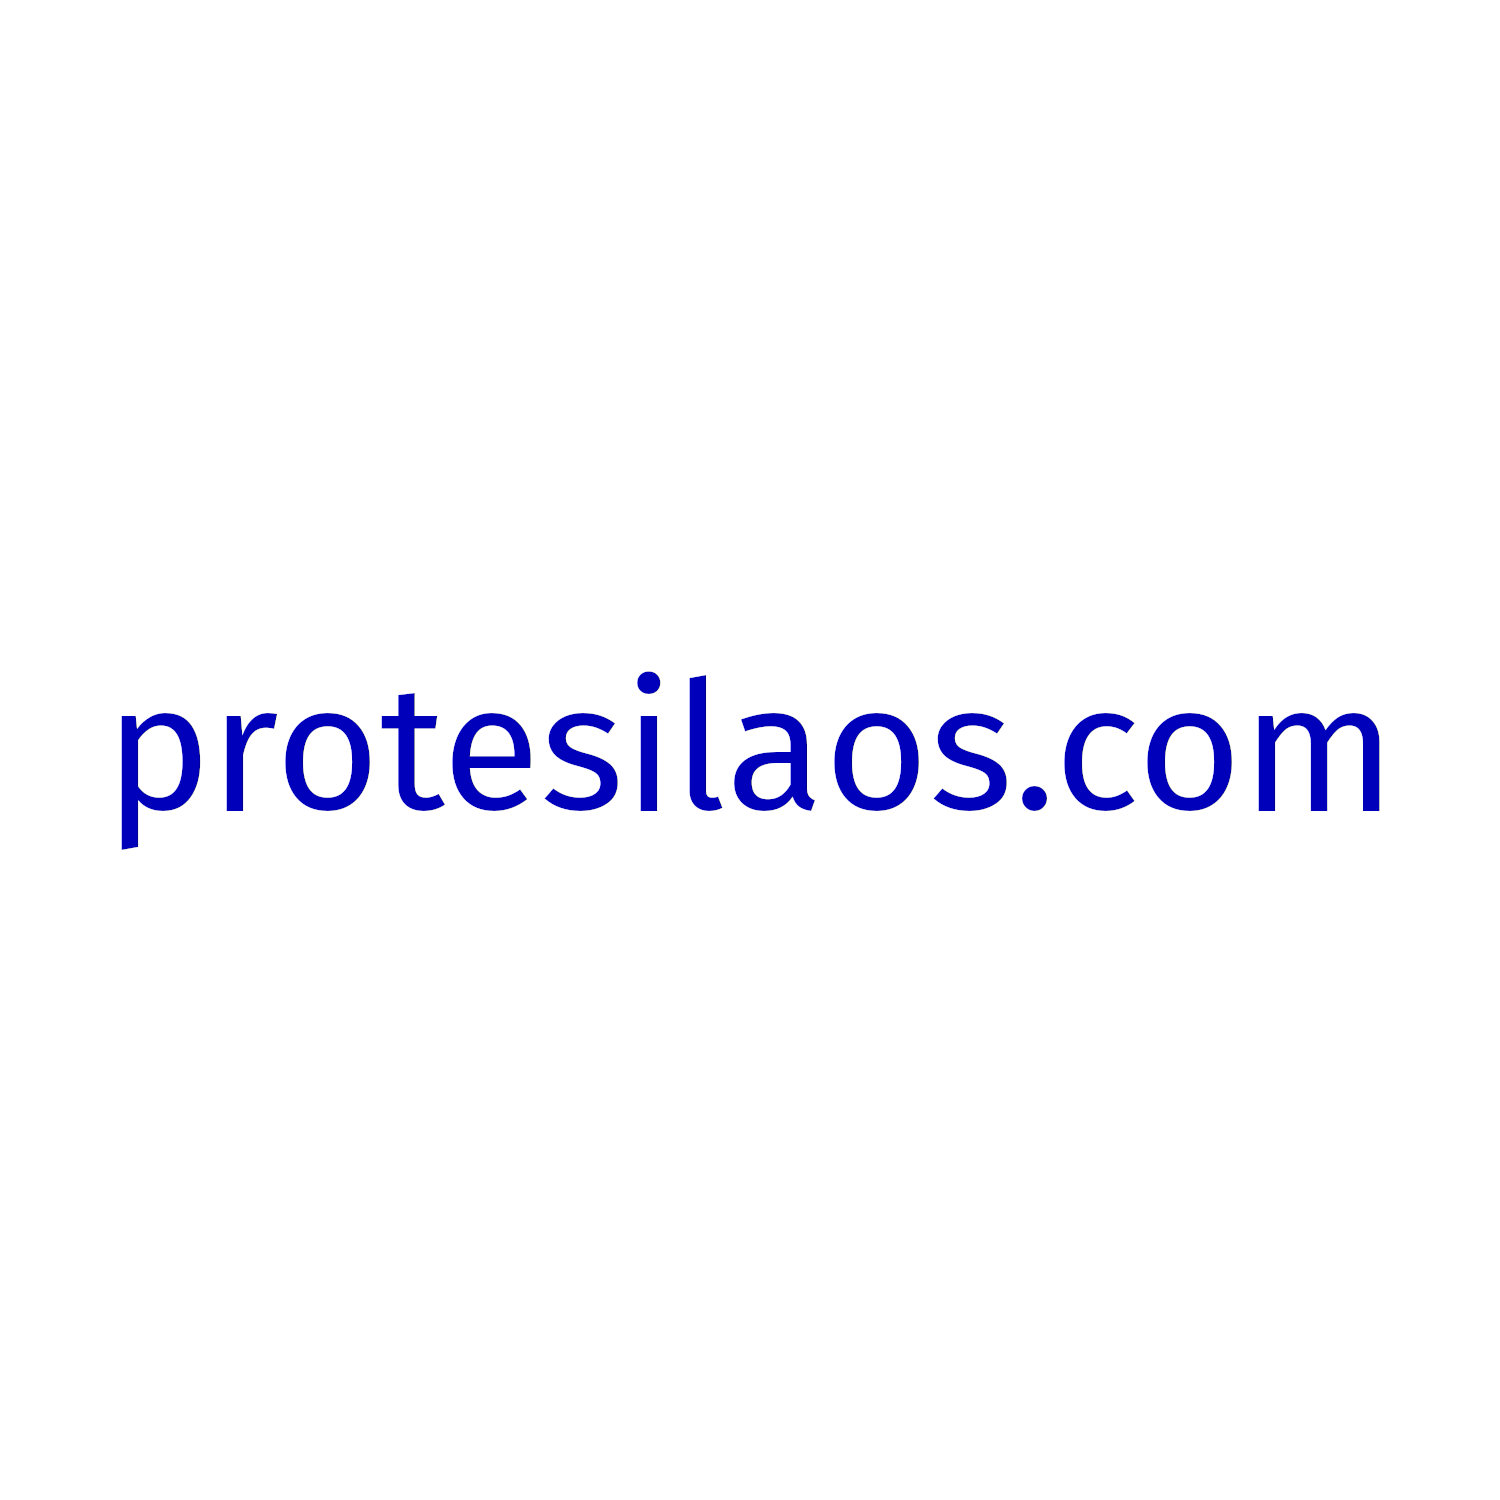 protesilaos.com image